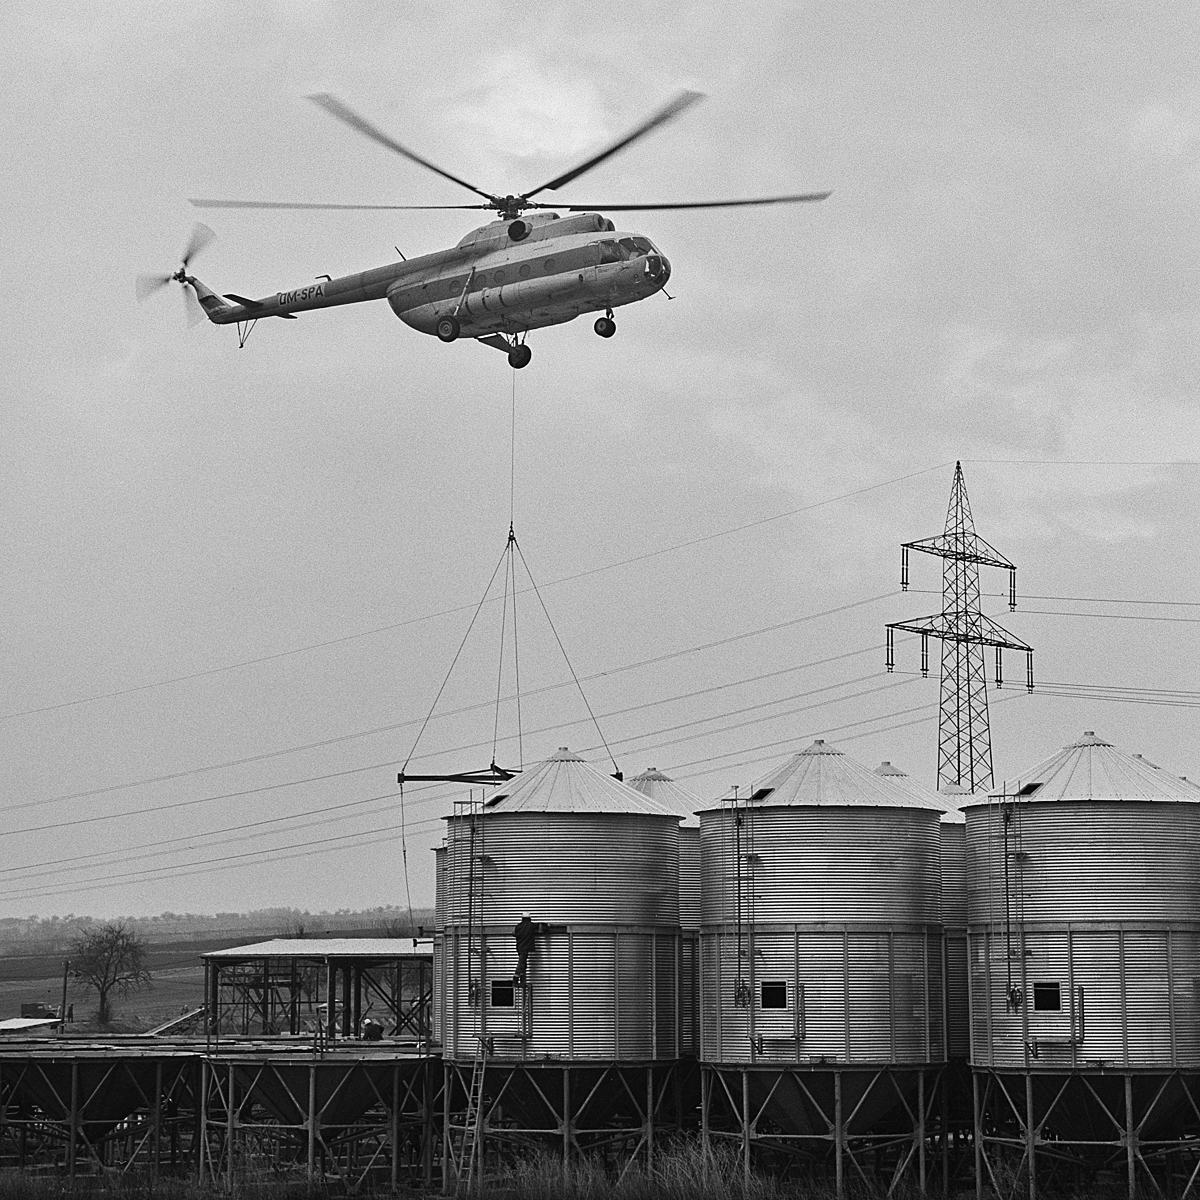 Mi-8T   DM-SPA